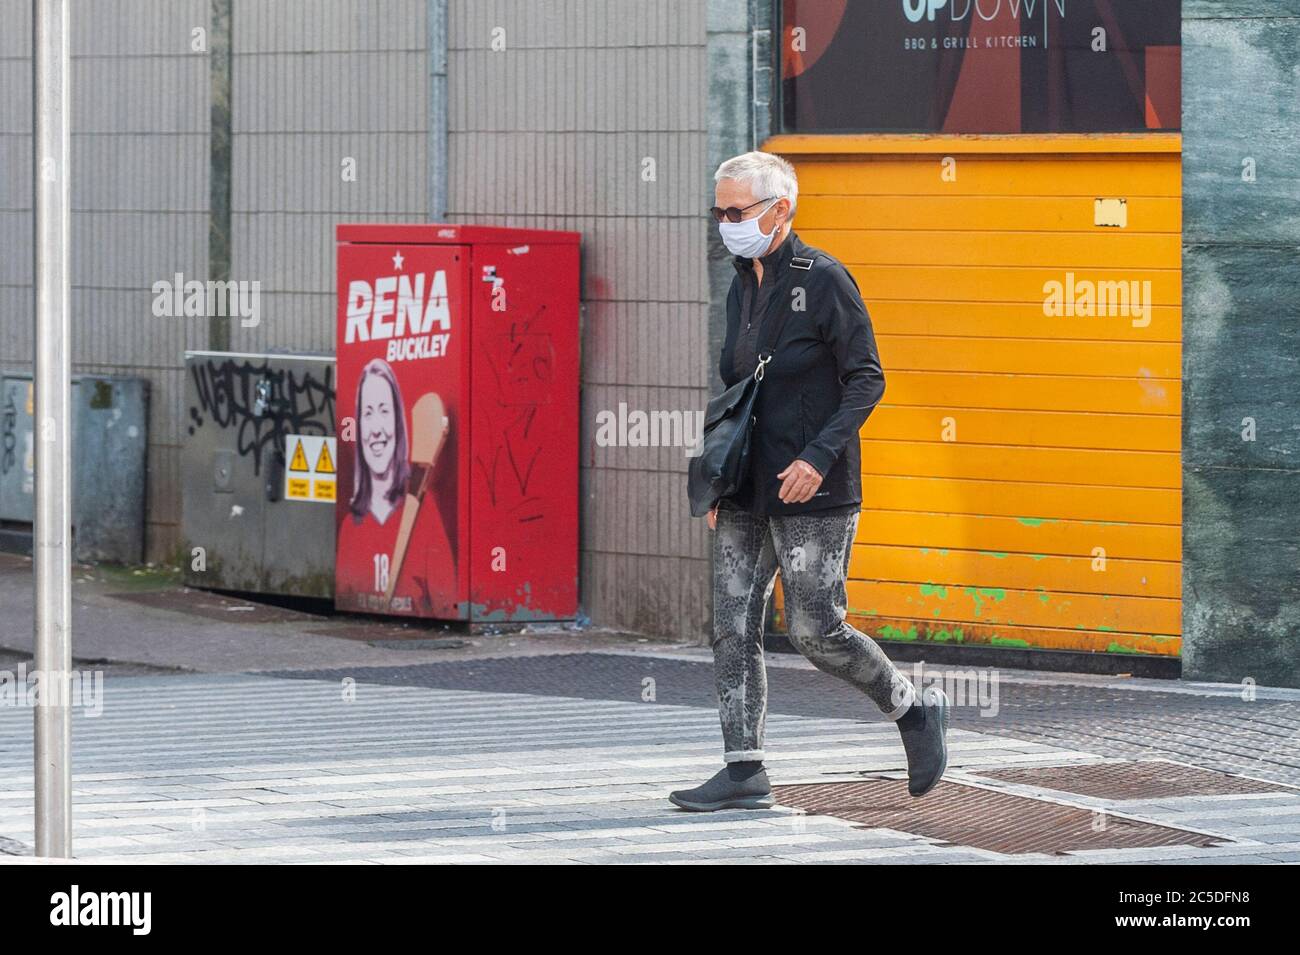 Cork, Irland. Juli 2020. Eine Frau trägt eine Gesichtsmaske in Cork City, um sich vor Covid-19 zu schützen. Quelle: AG News/Alamy Live News Stockfoto